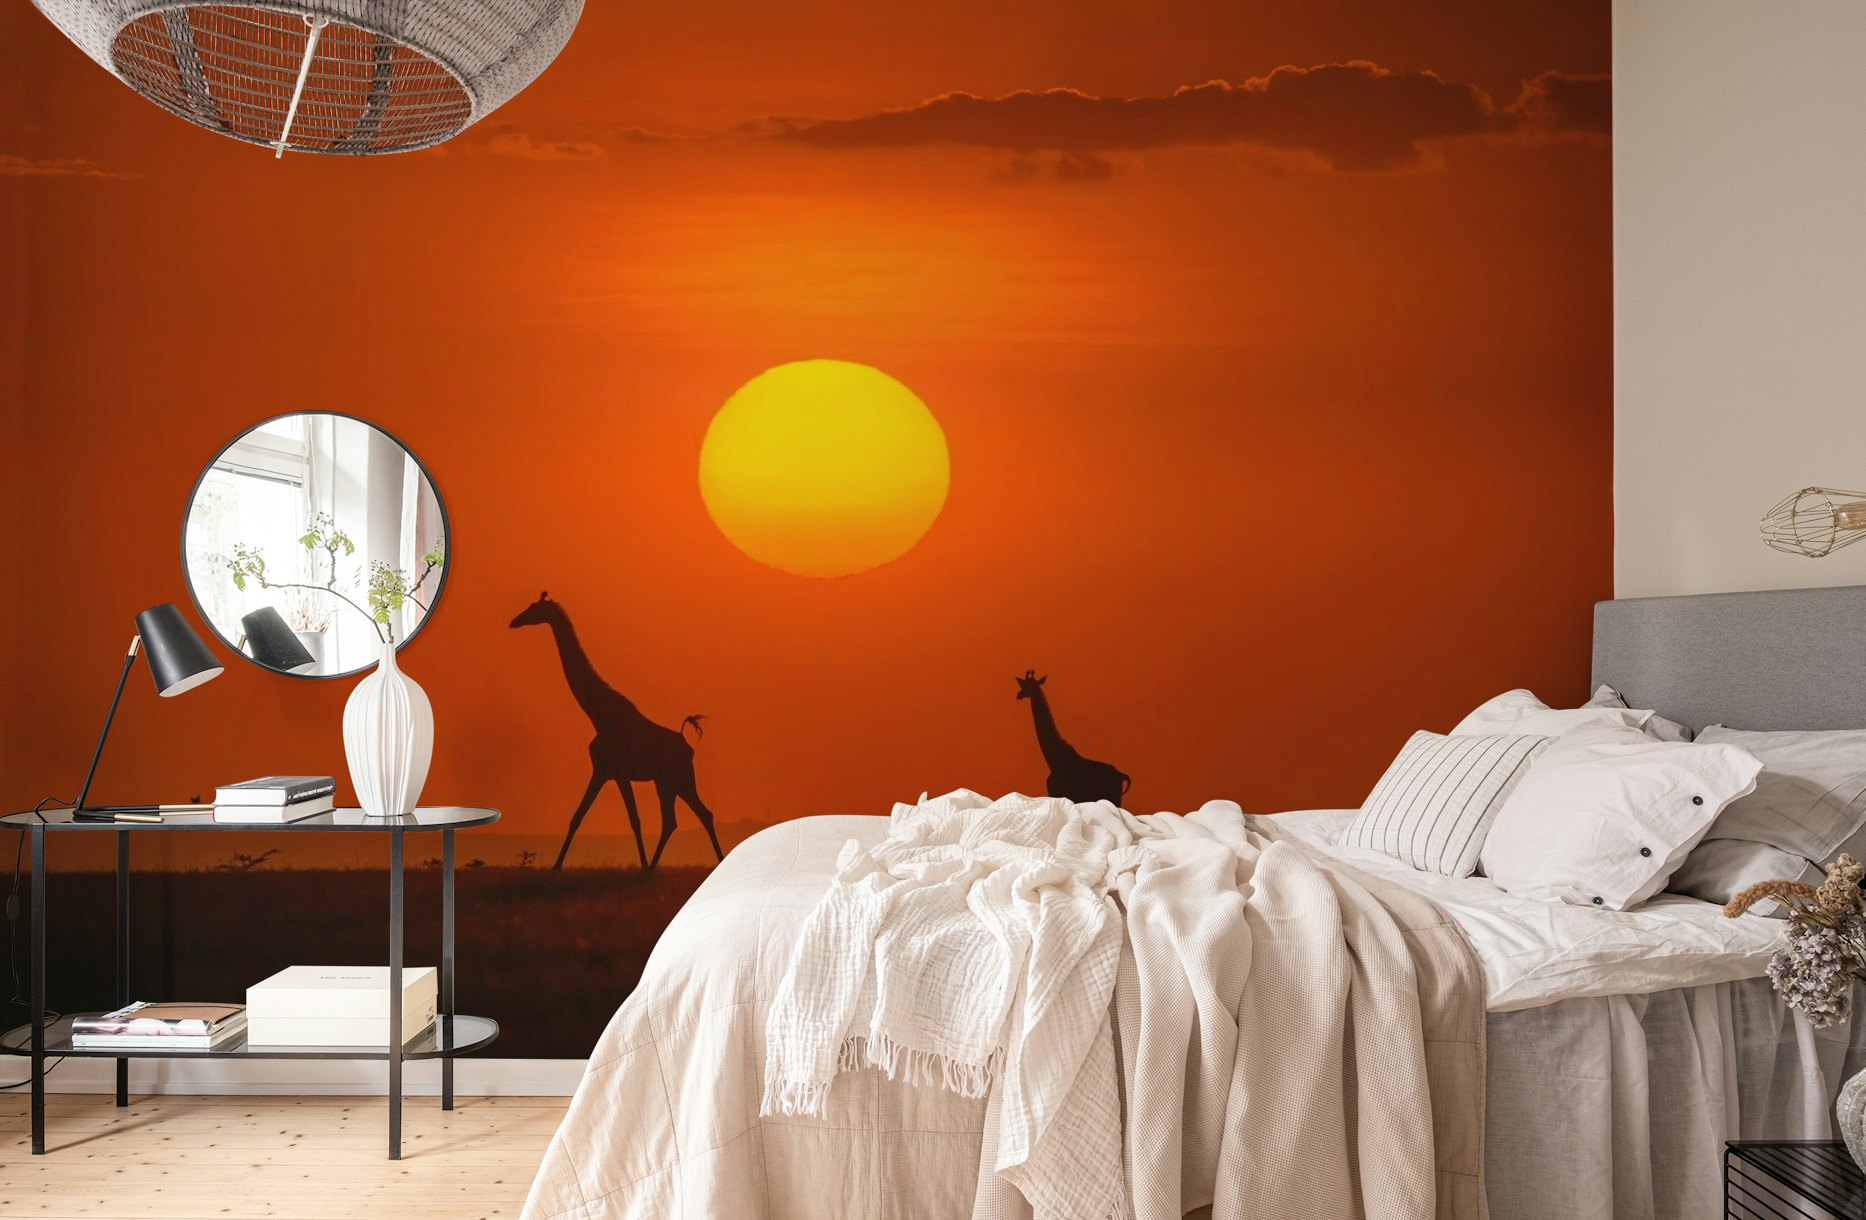 Giraffes in the sunset wallpaper